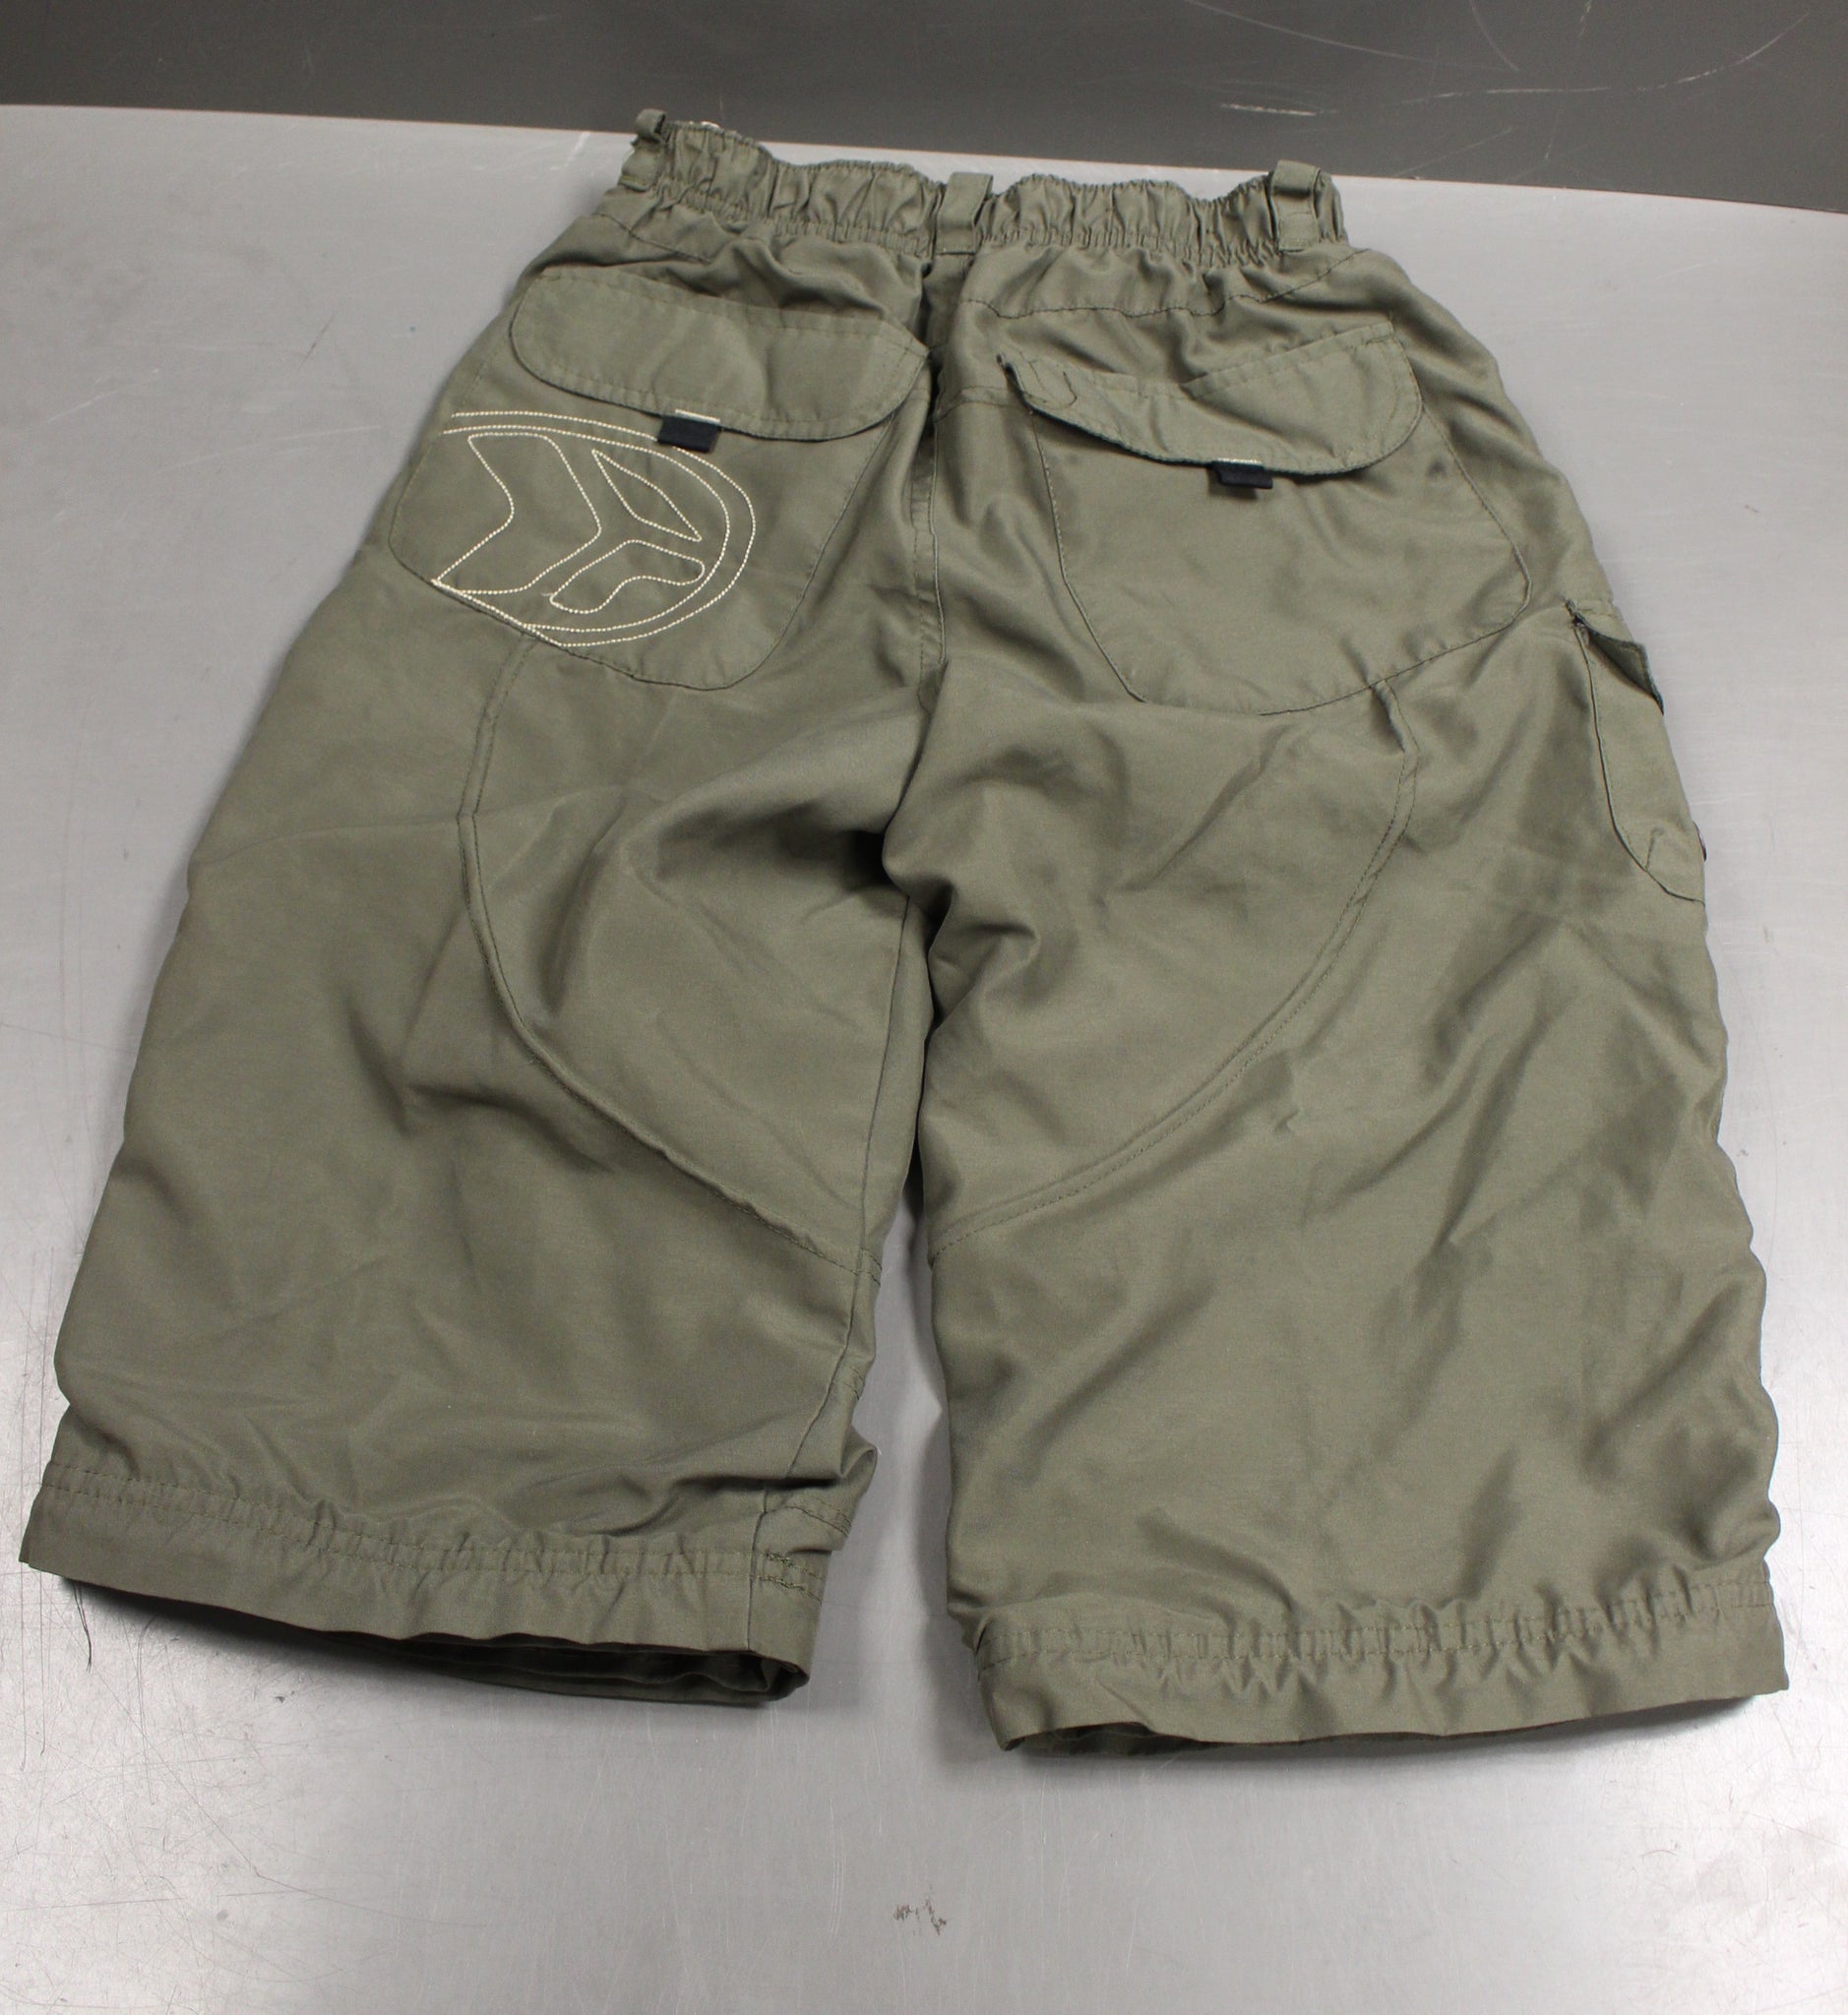 Zero Xposure Boys Capri/Pants, Size: Large (14/16) – Military